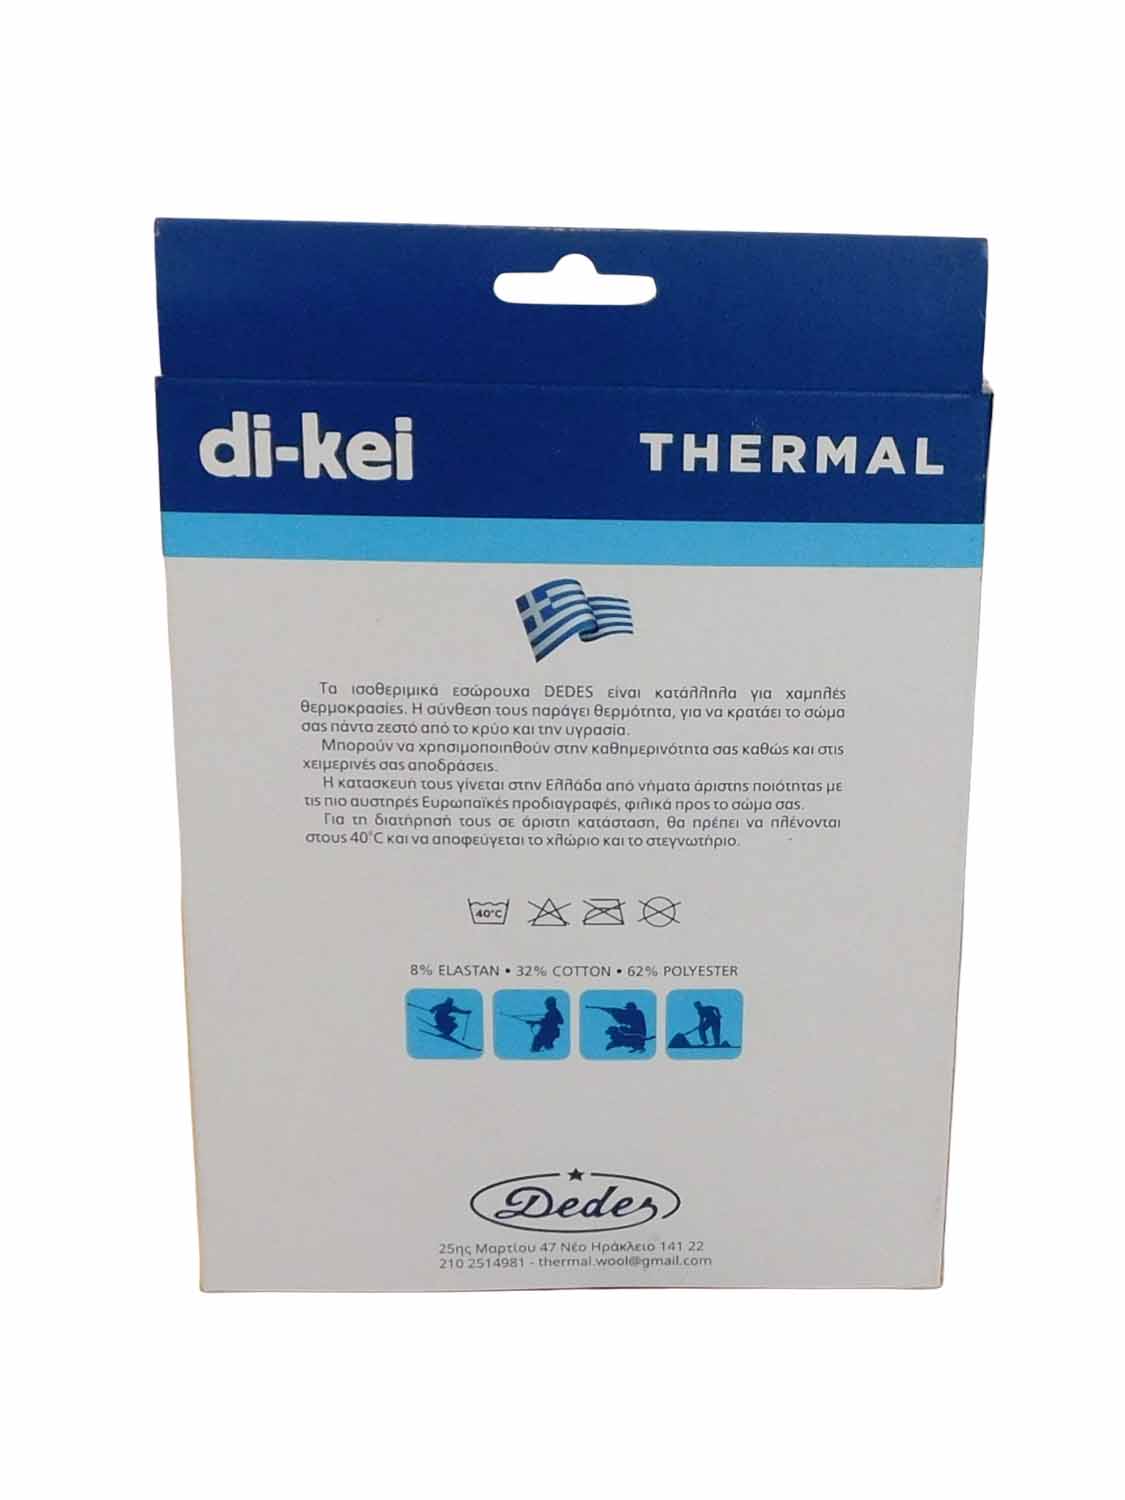 Di-Kei thermal box rear